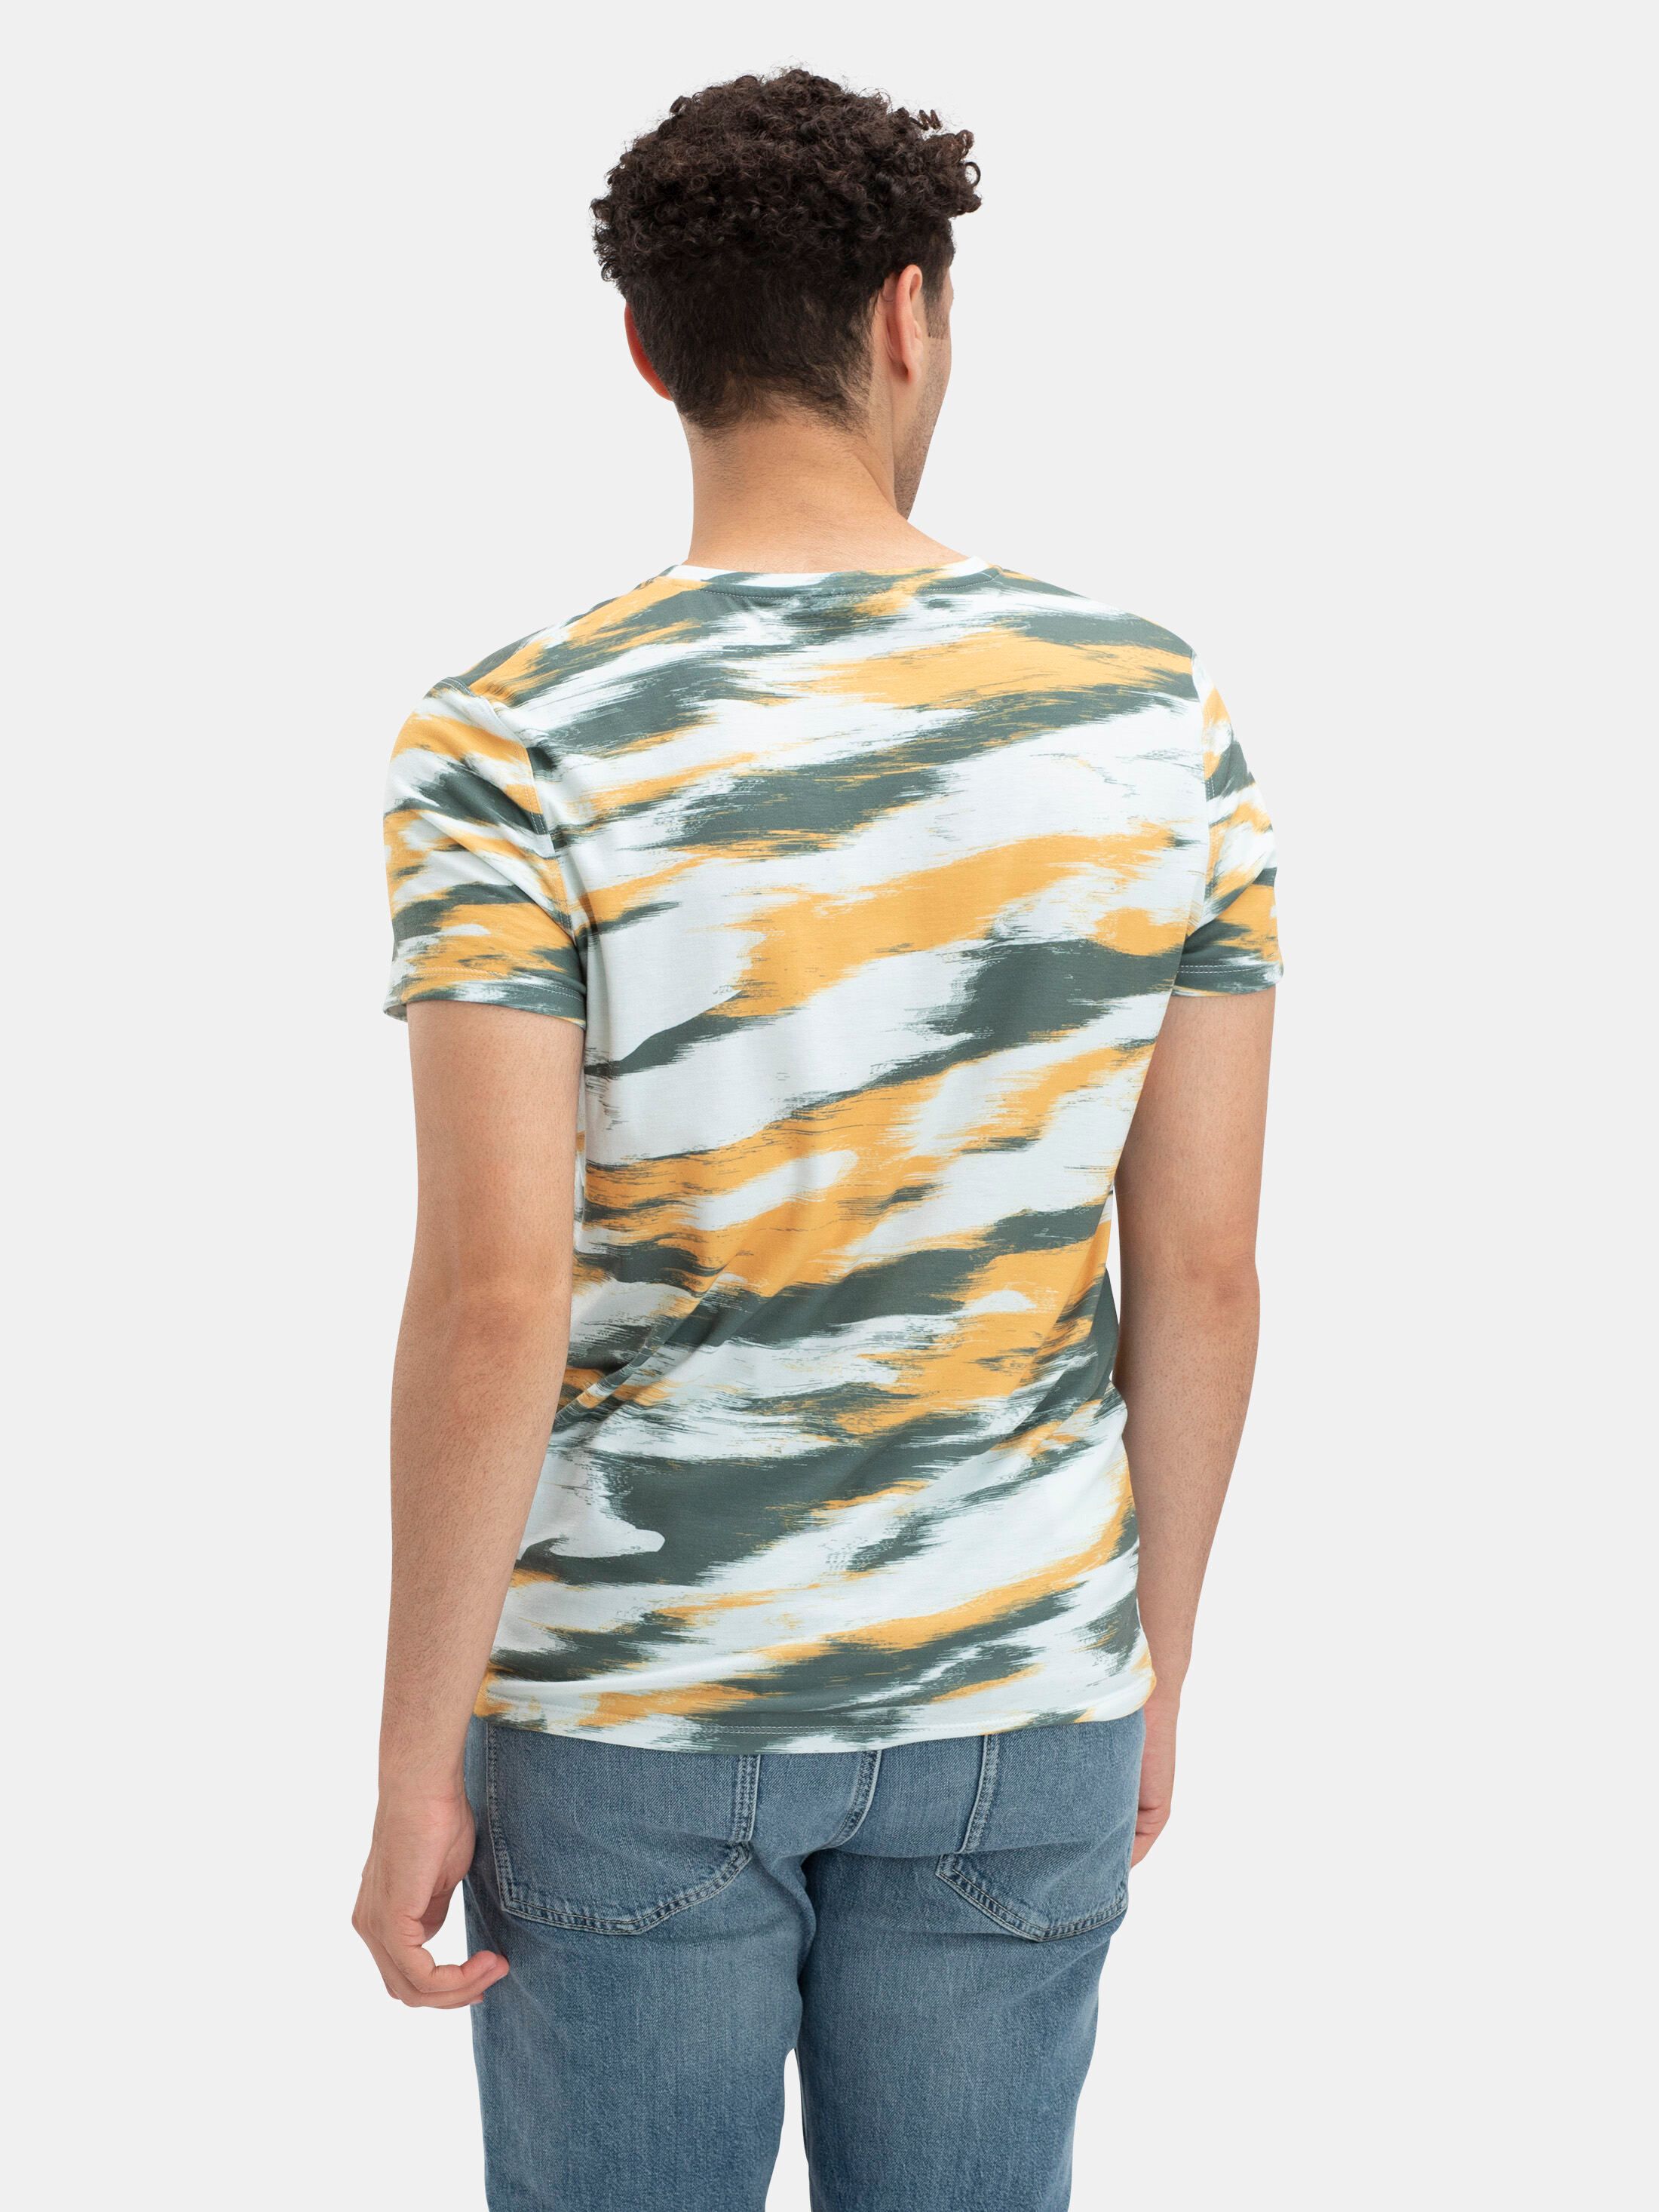 200 Best EMBOSS ideas  tshirt designs, mens tshirts, tshirt print